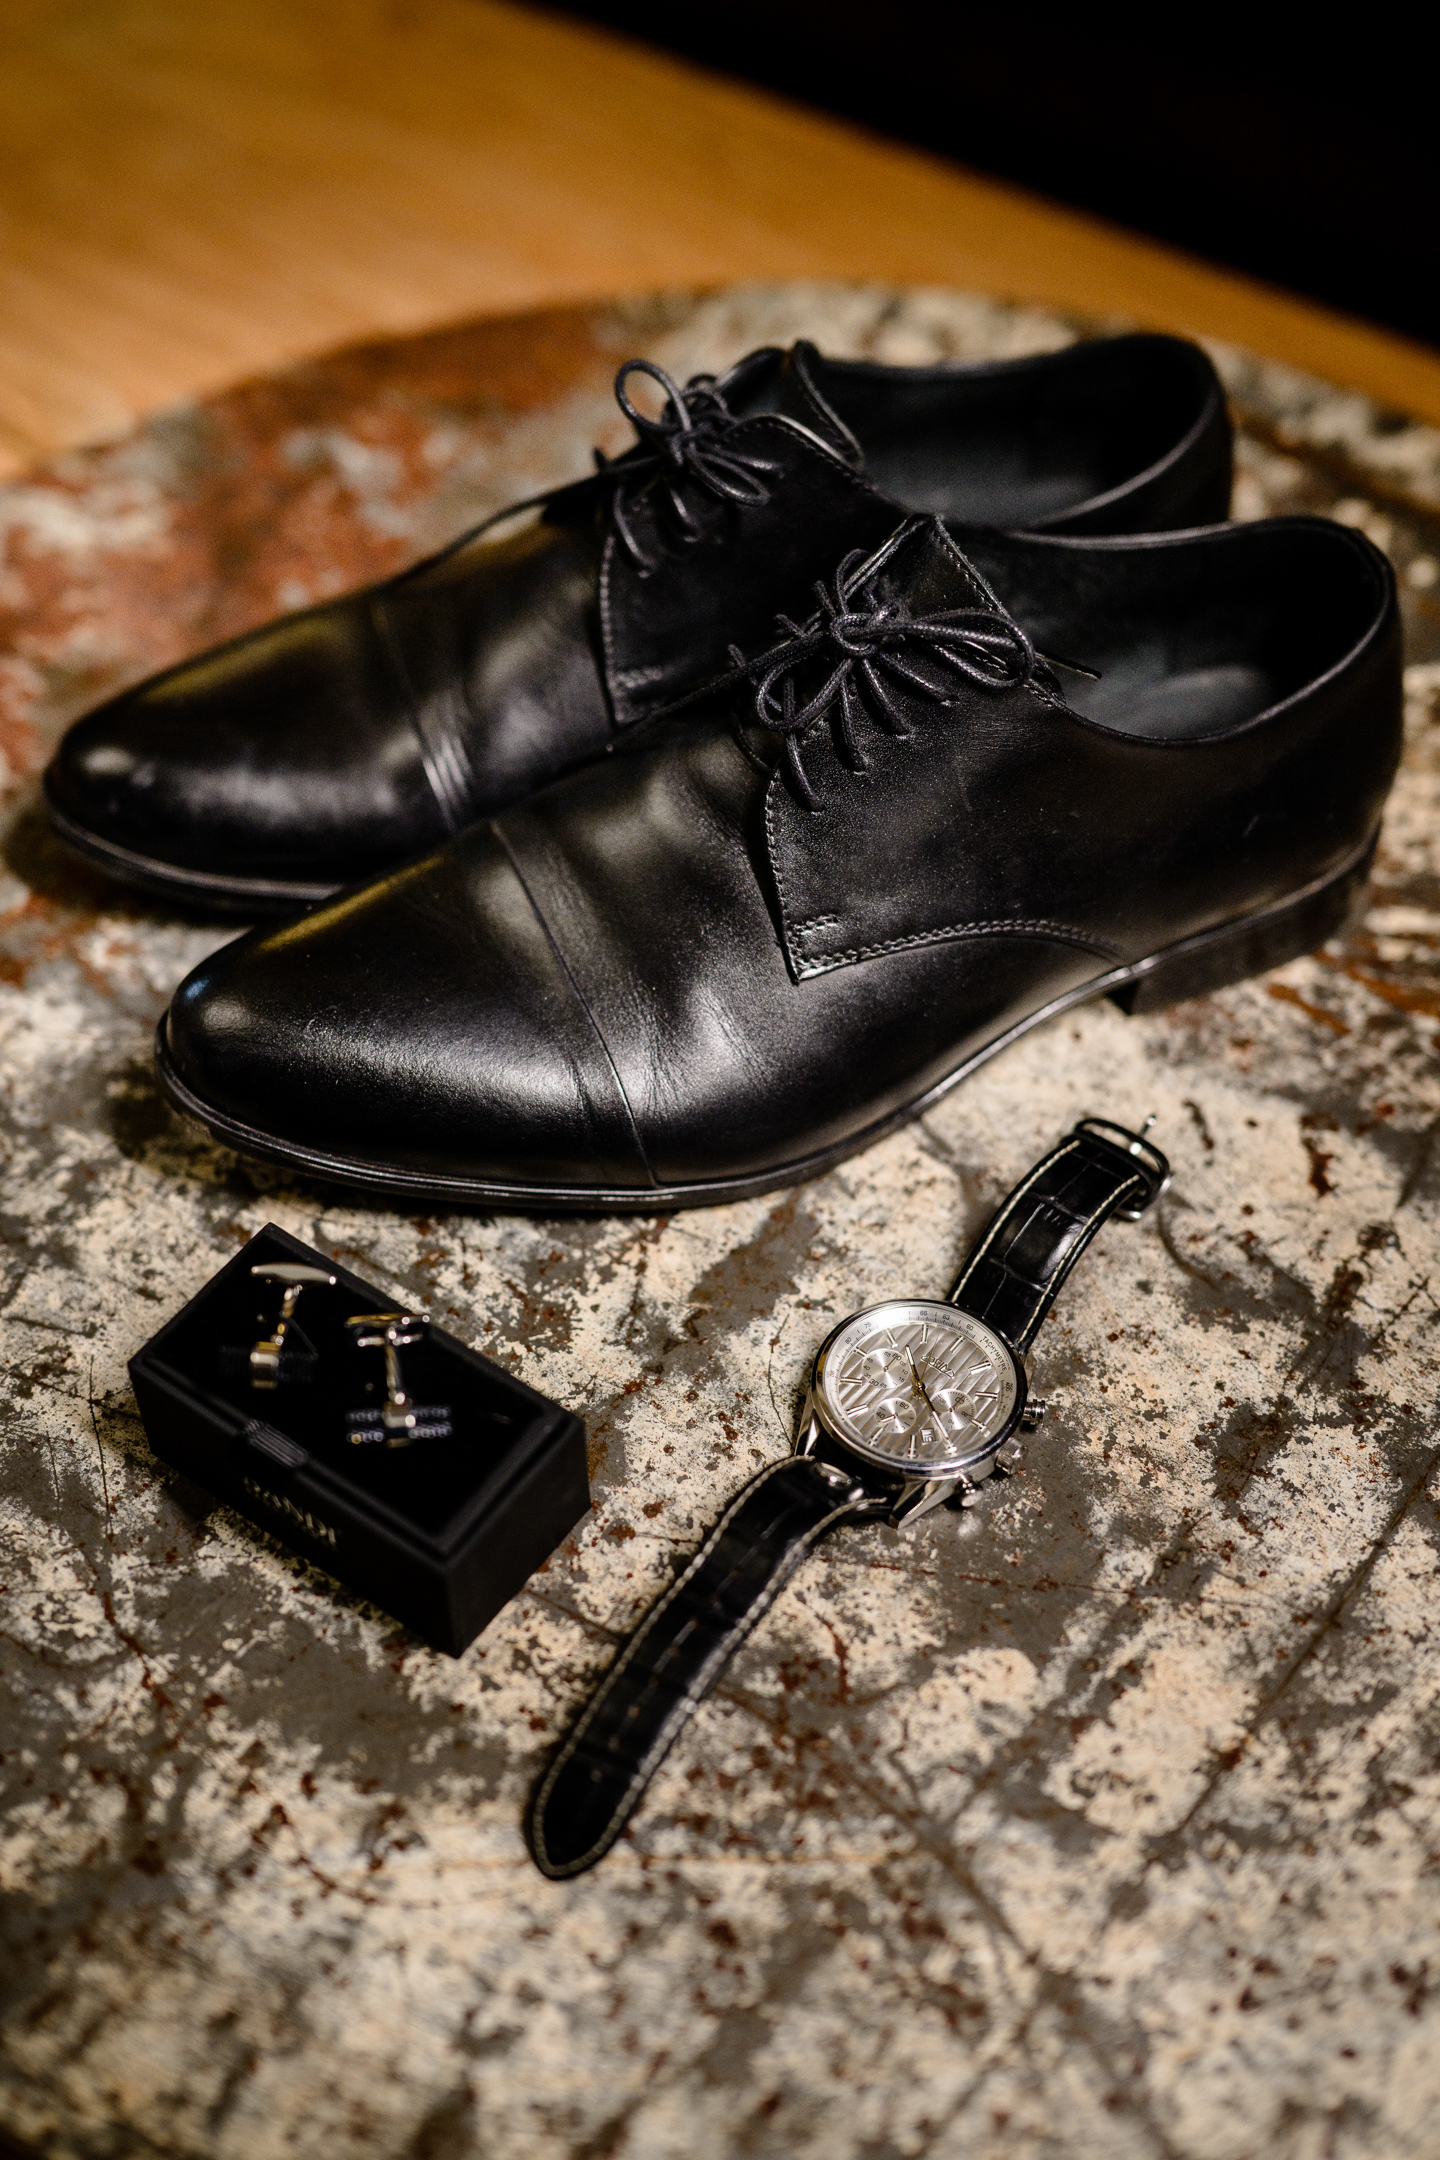 ženichovy manžetové knoflíčky spolu s hodinkami a botami